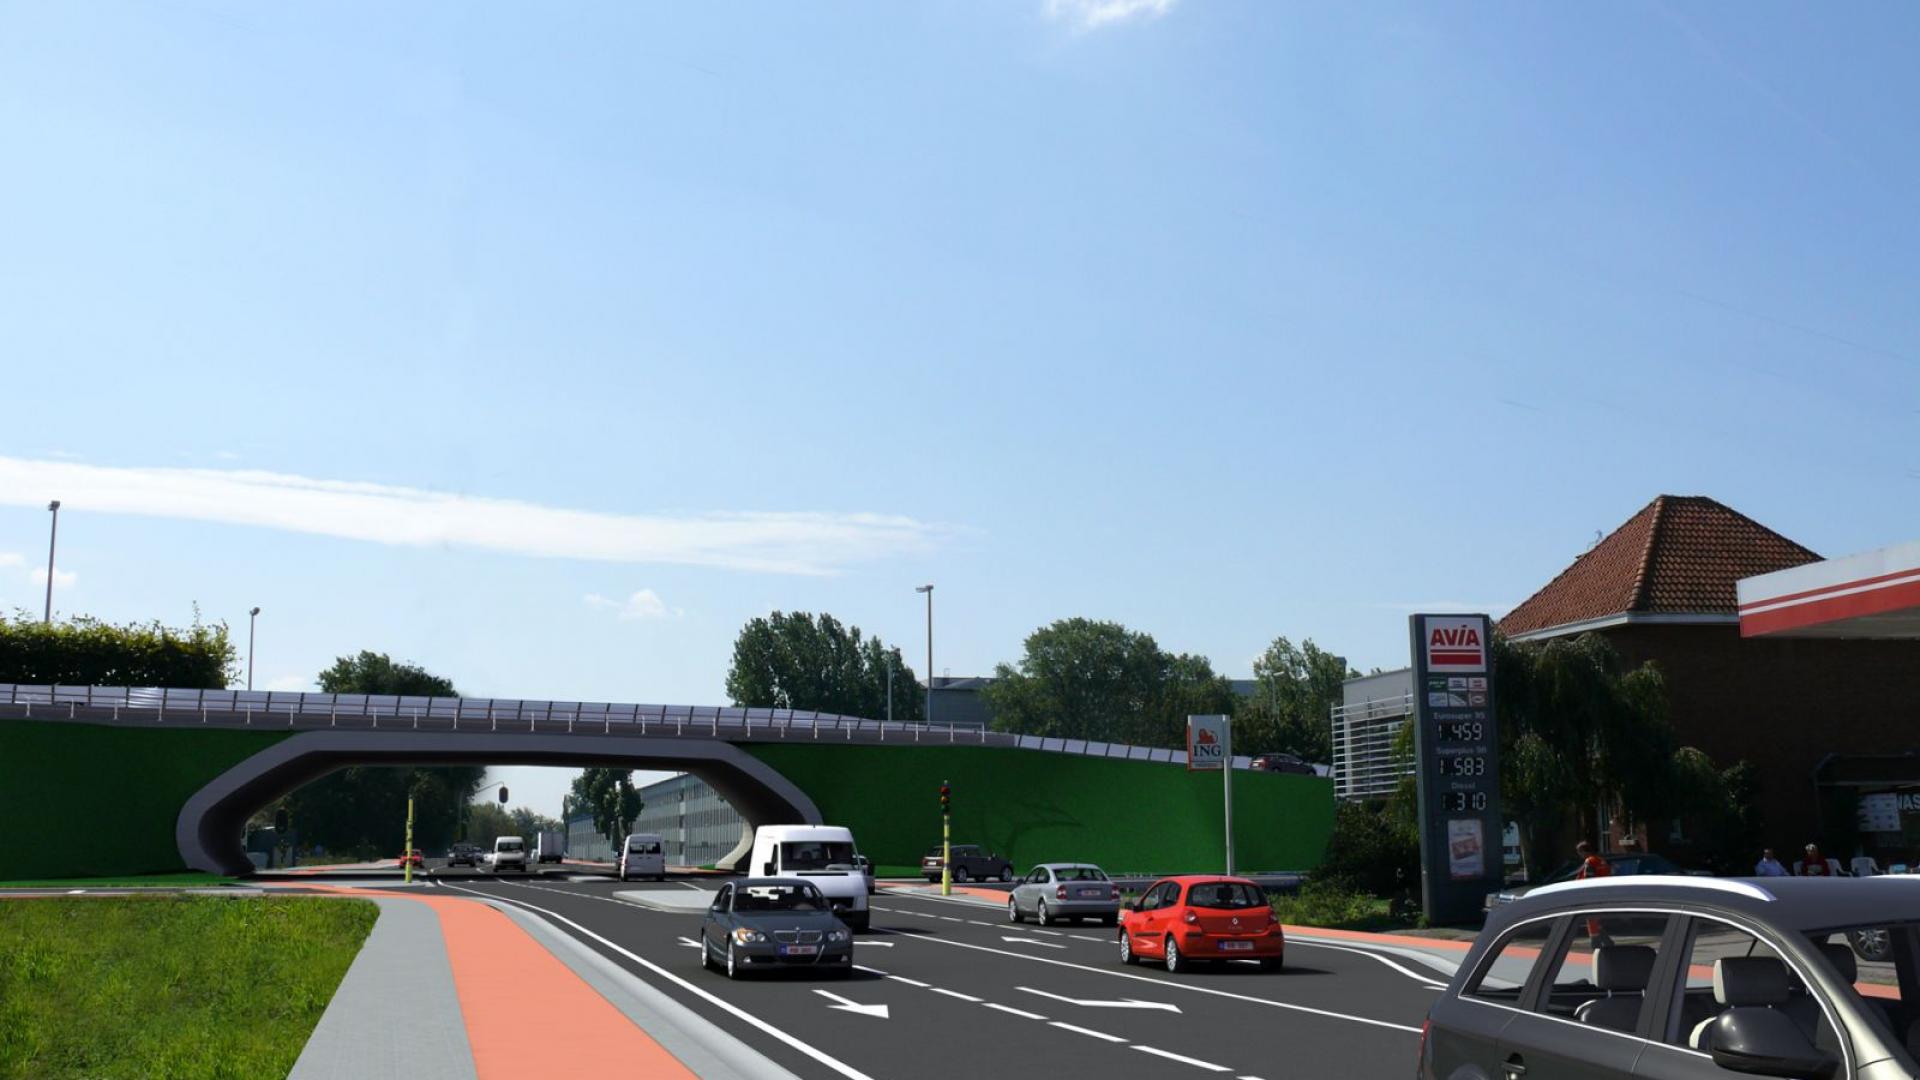 R6 Mechelen bruggen ontwerp